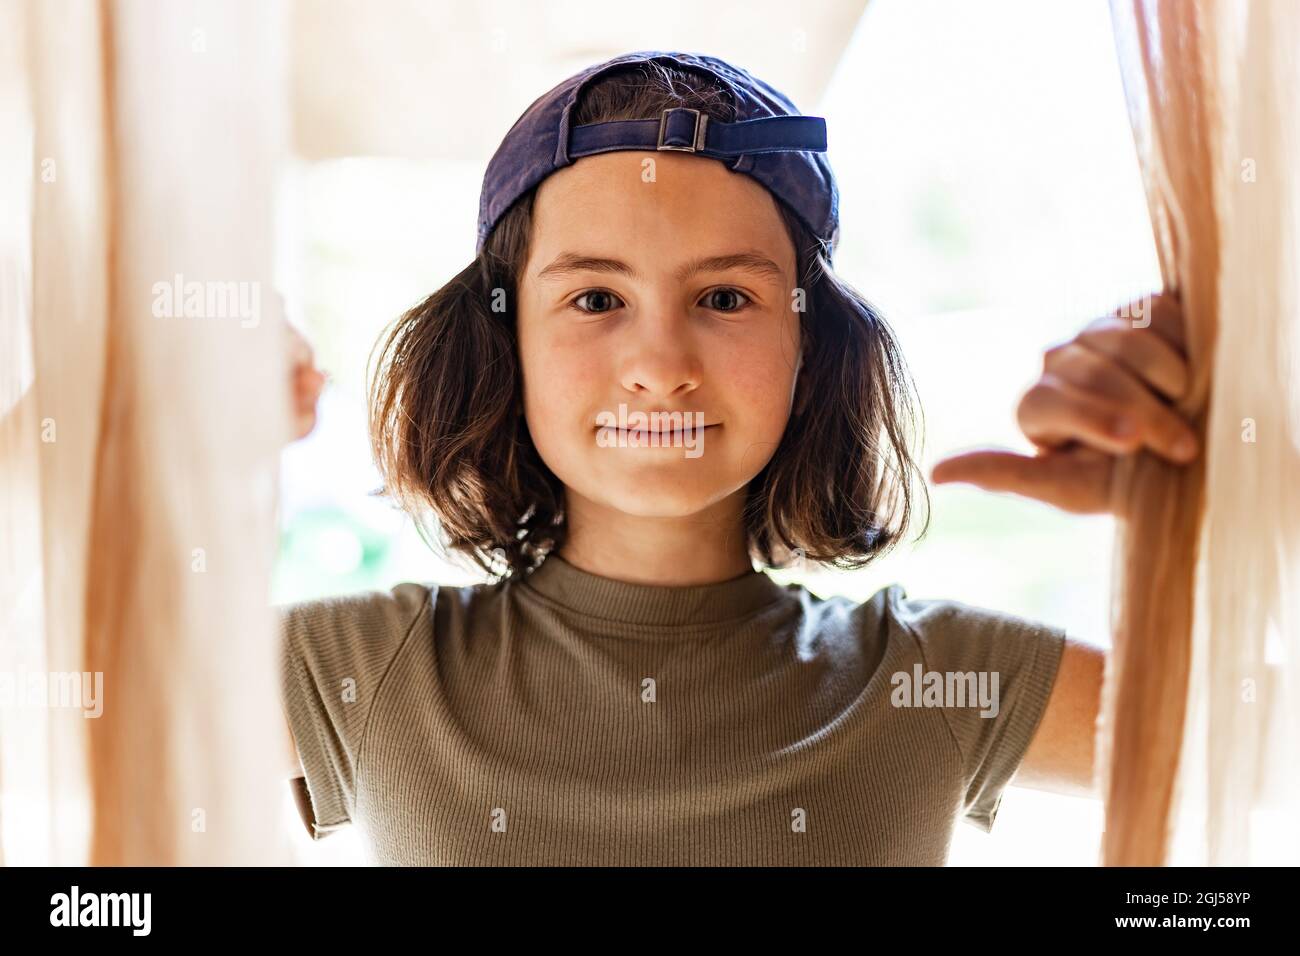 Sommerportrait eines jungen hübschen glücklichen Mädchens in einer gedrehten Baseballmütze. Fröhlich lächelnd Teenager Brünette Mädchen. Nahaufnahme. Lifestyle-Fotografie. Hoki Stockfoto